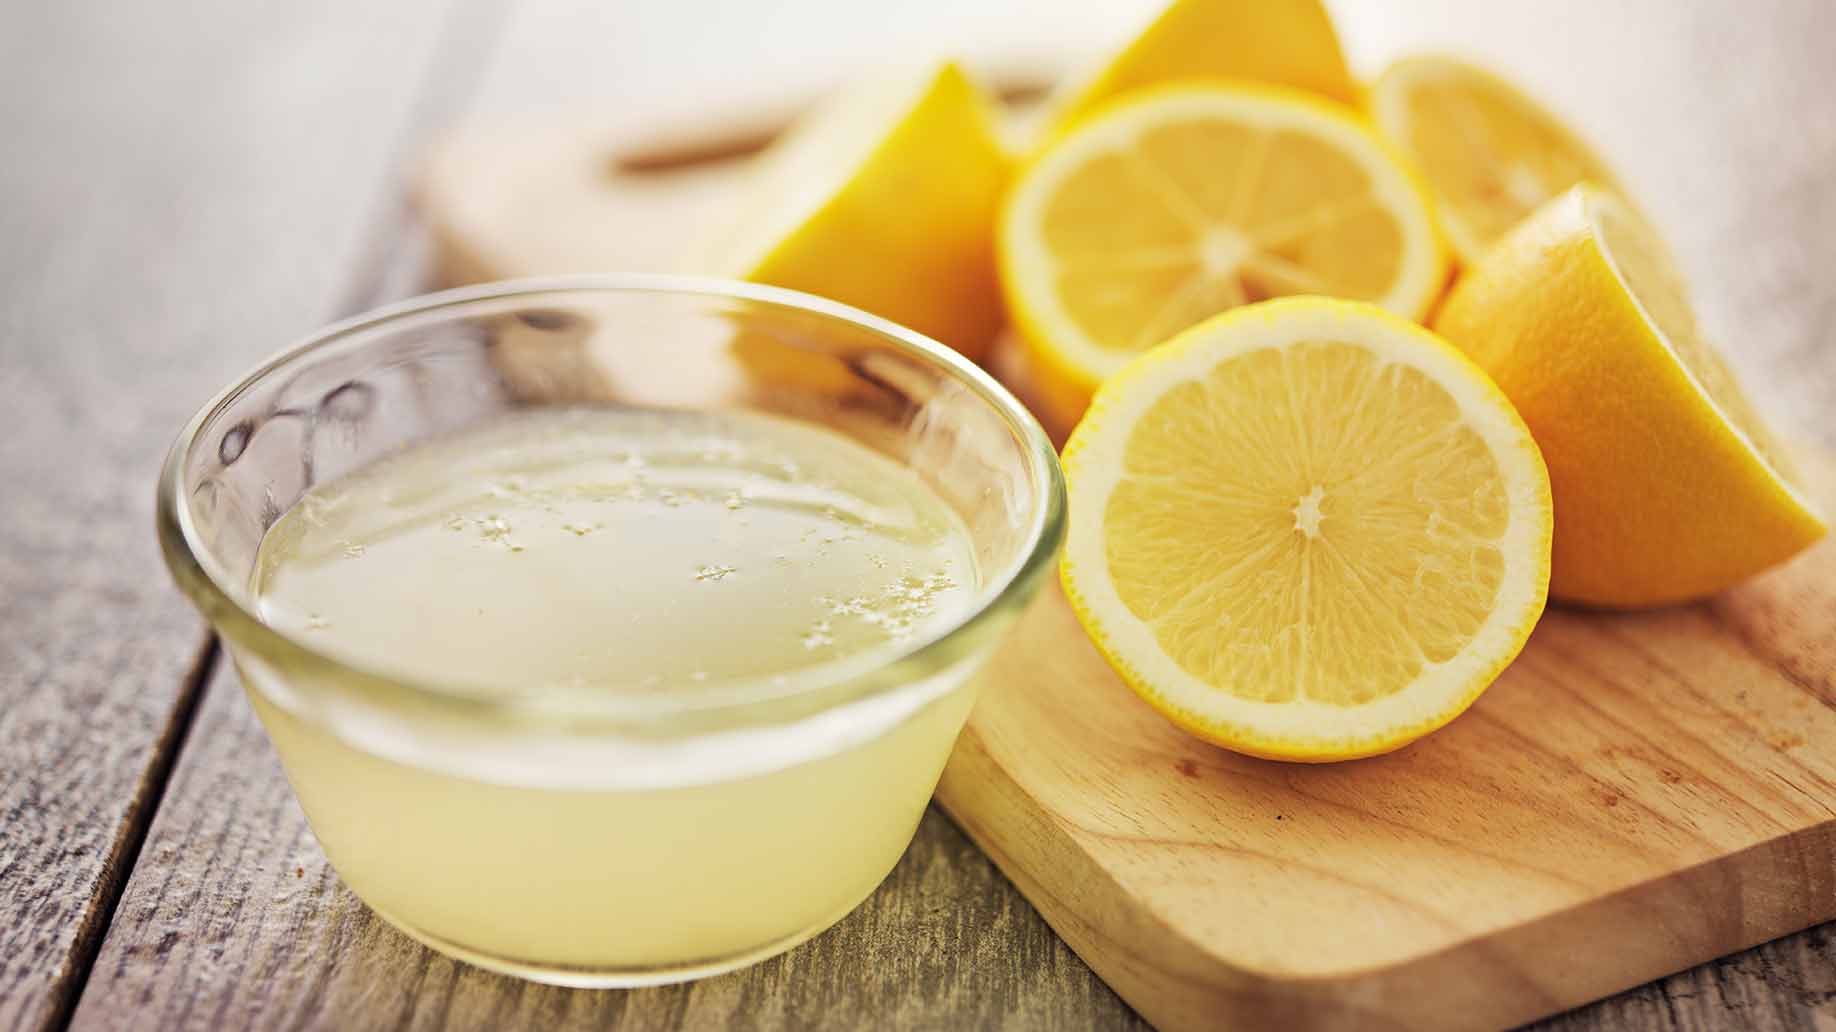 Haushaltsreinigung mit Zitrone - Zitronen und Schale mit Zitronensaft